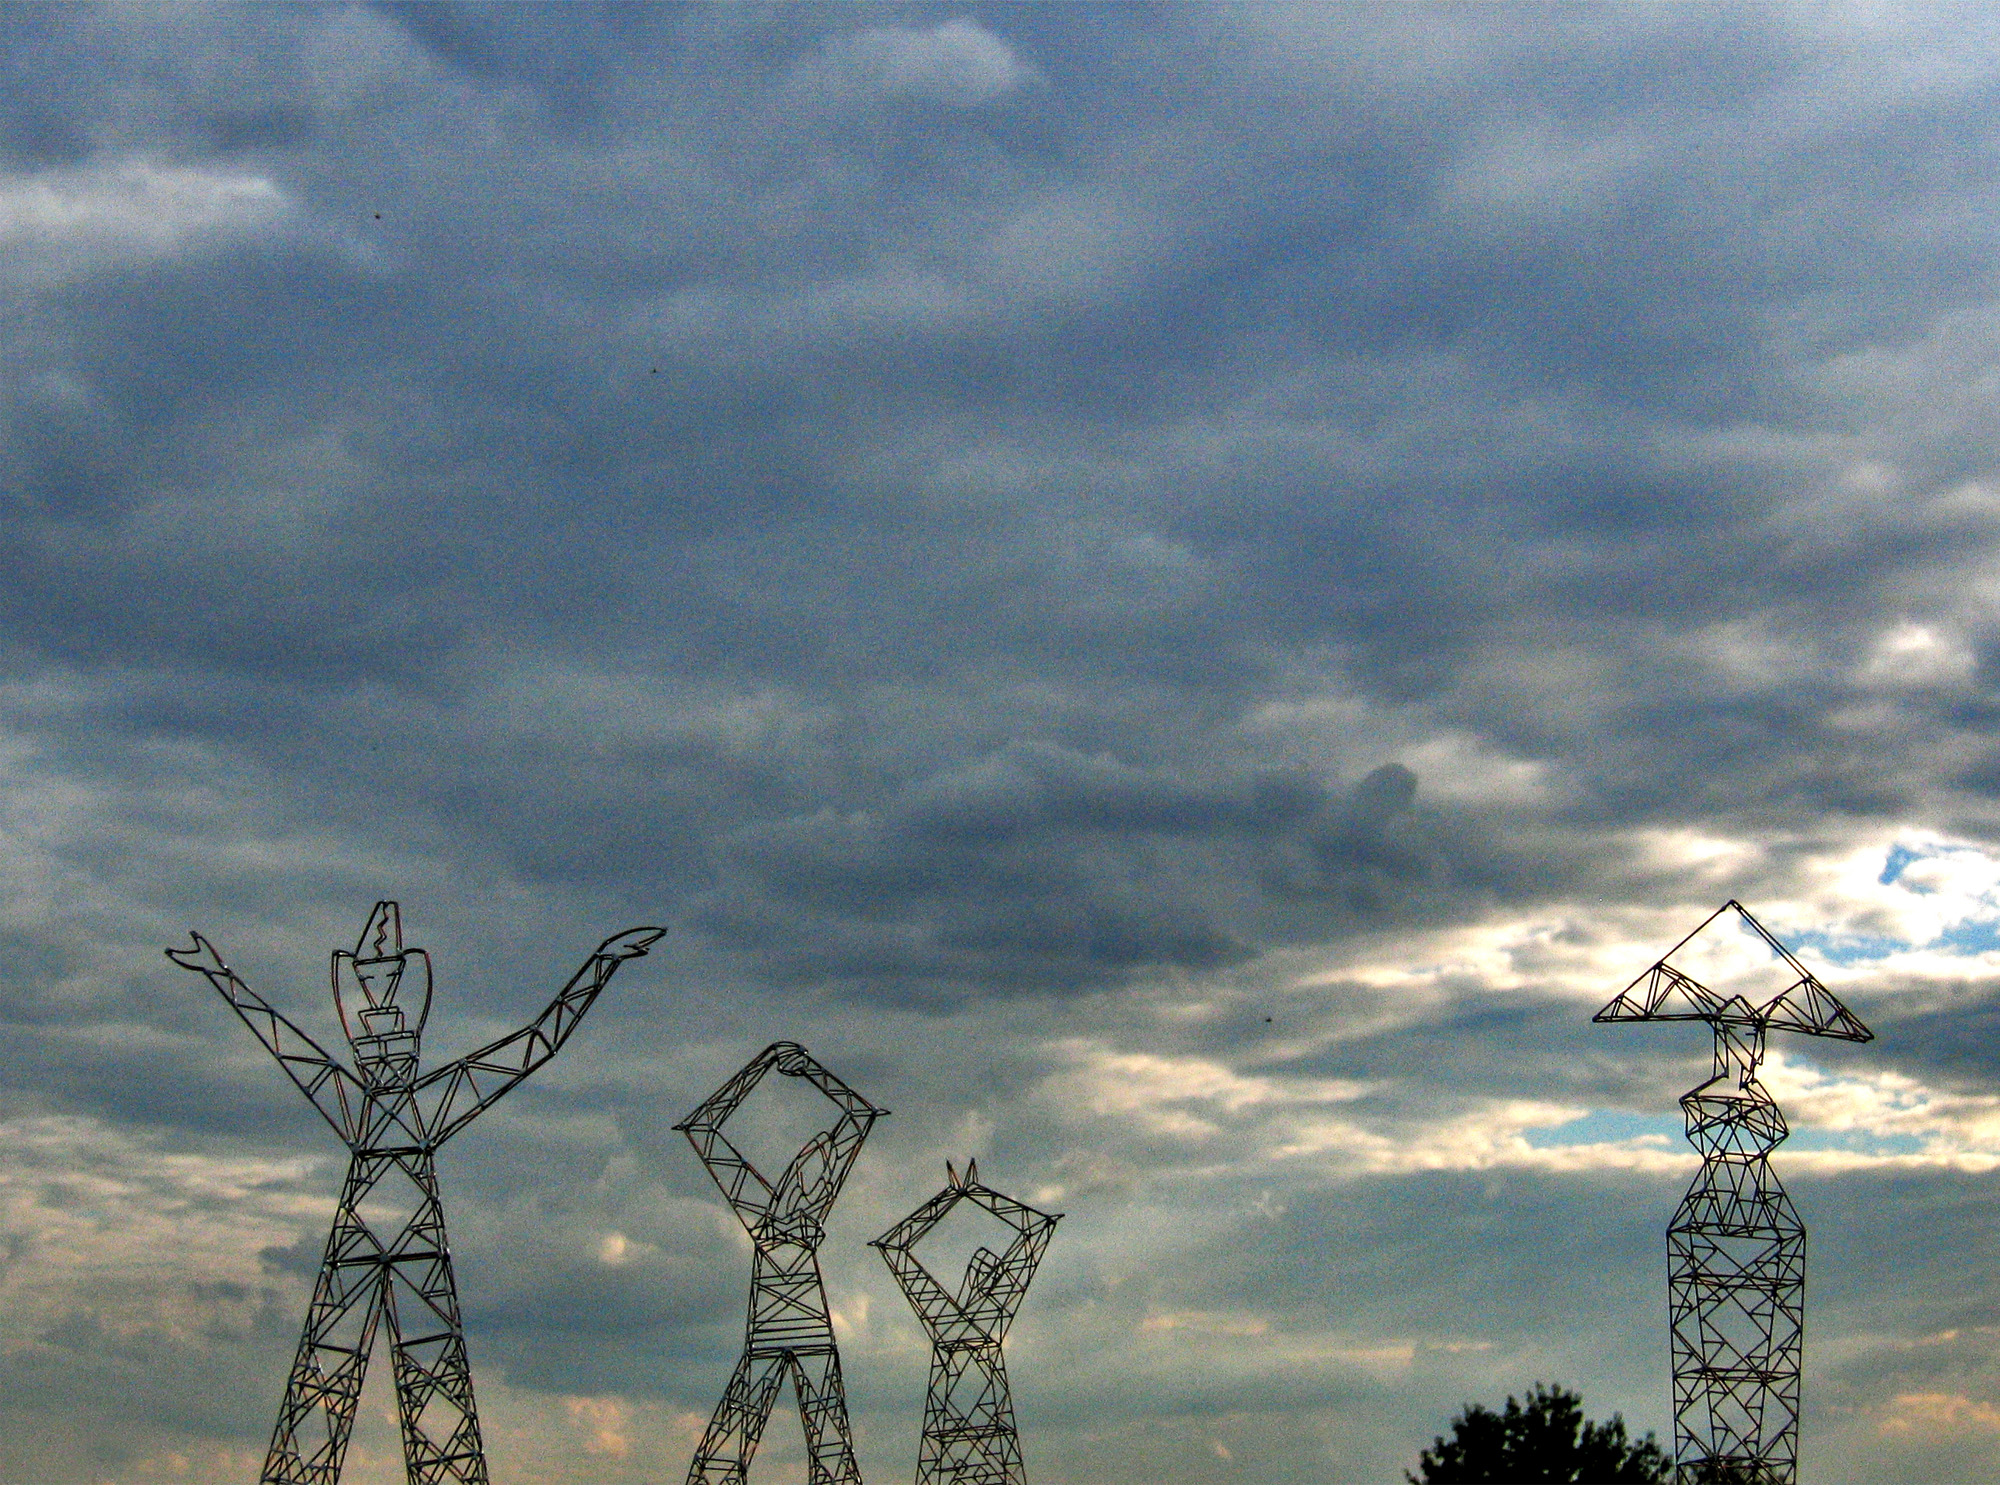 Giant Ladies, four Sculpture-Pylons